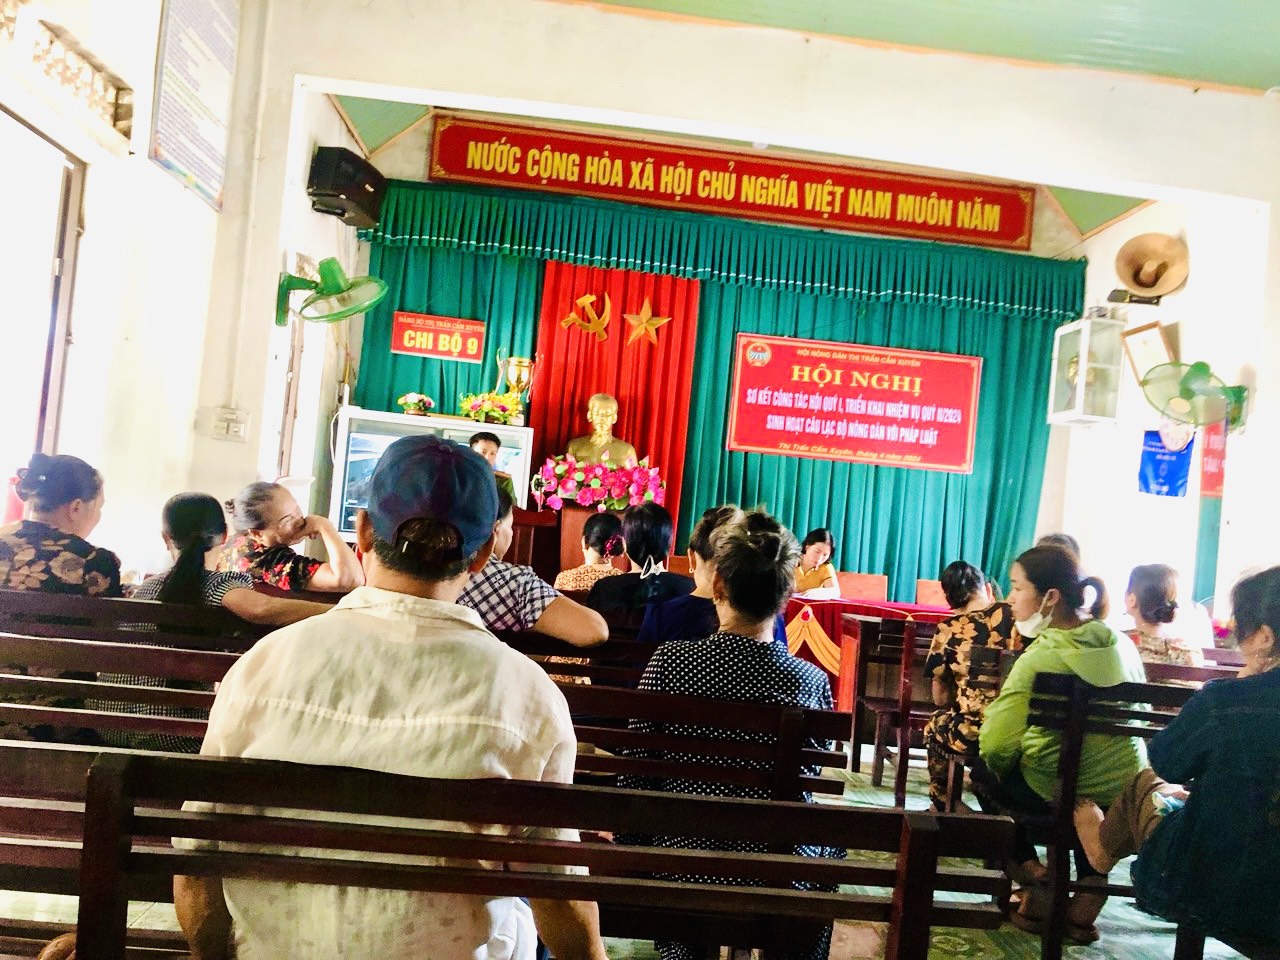 Thị trấn Cẩm Xuyên tổ chức sinh hoạt các câu lạc bộ nông dân với pháp luật